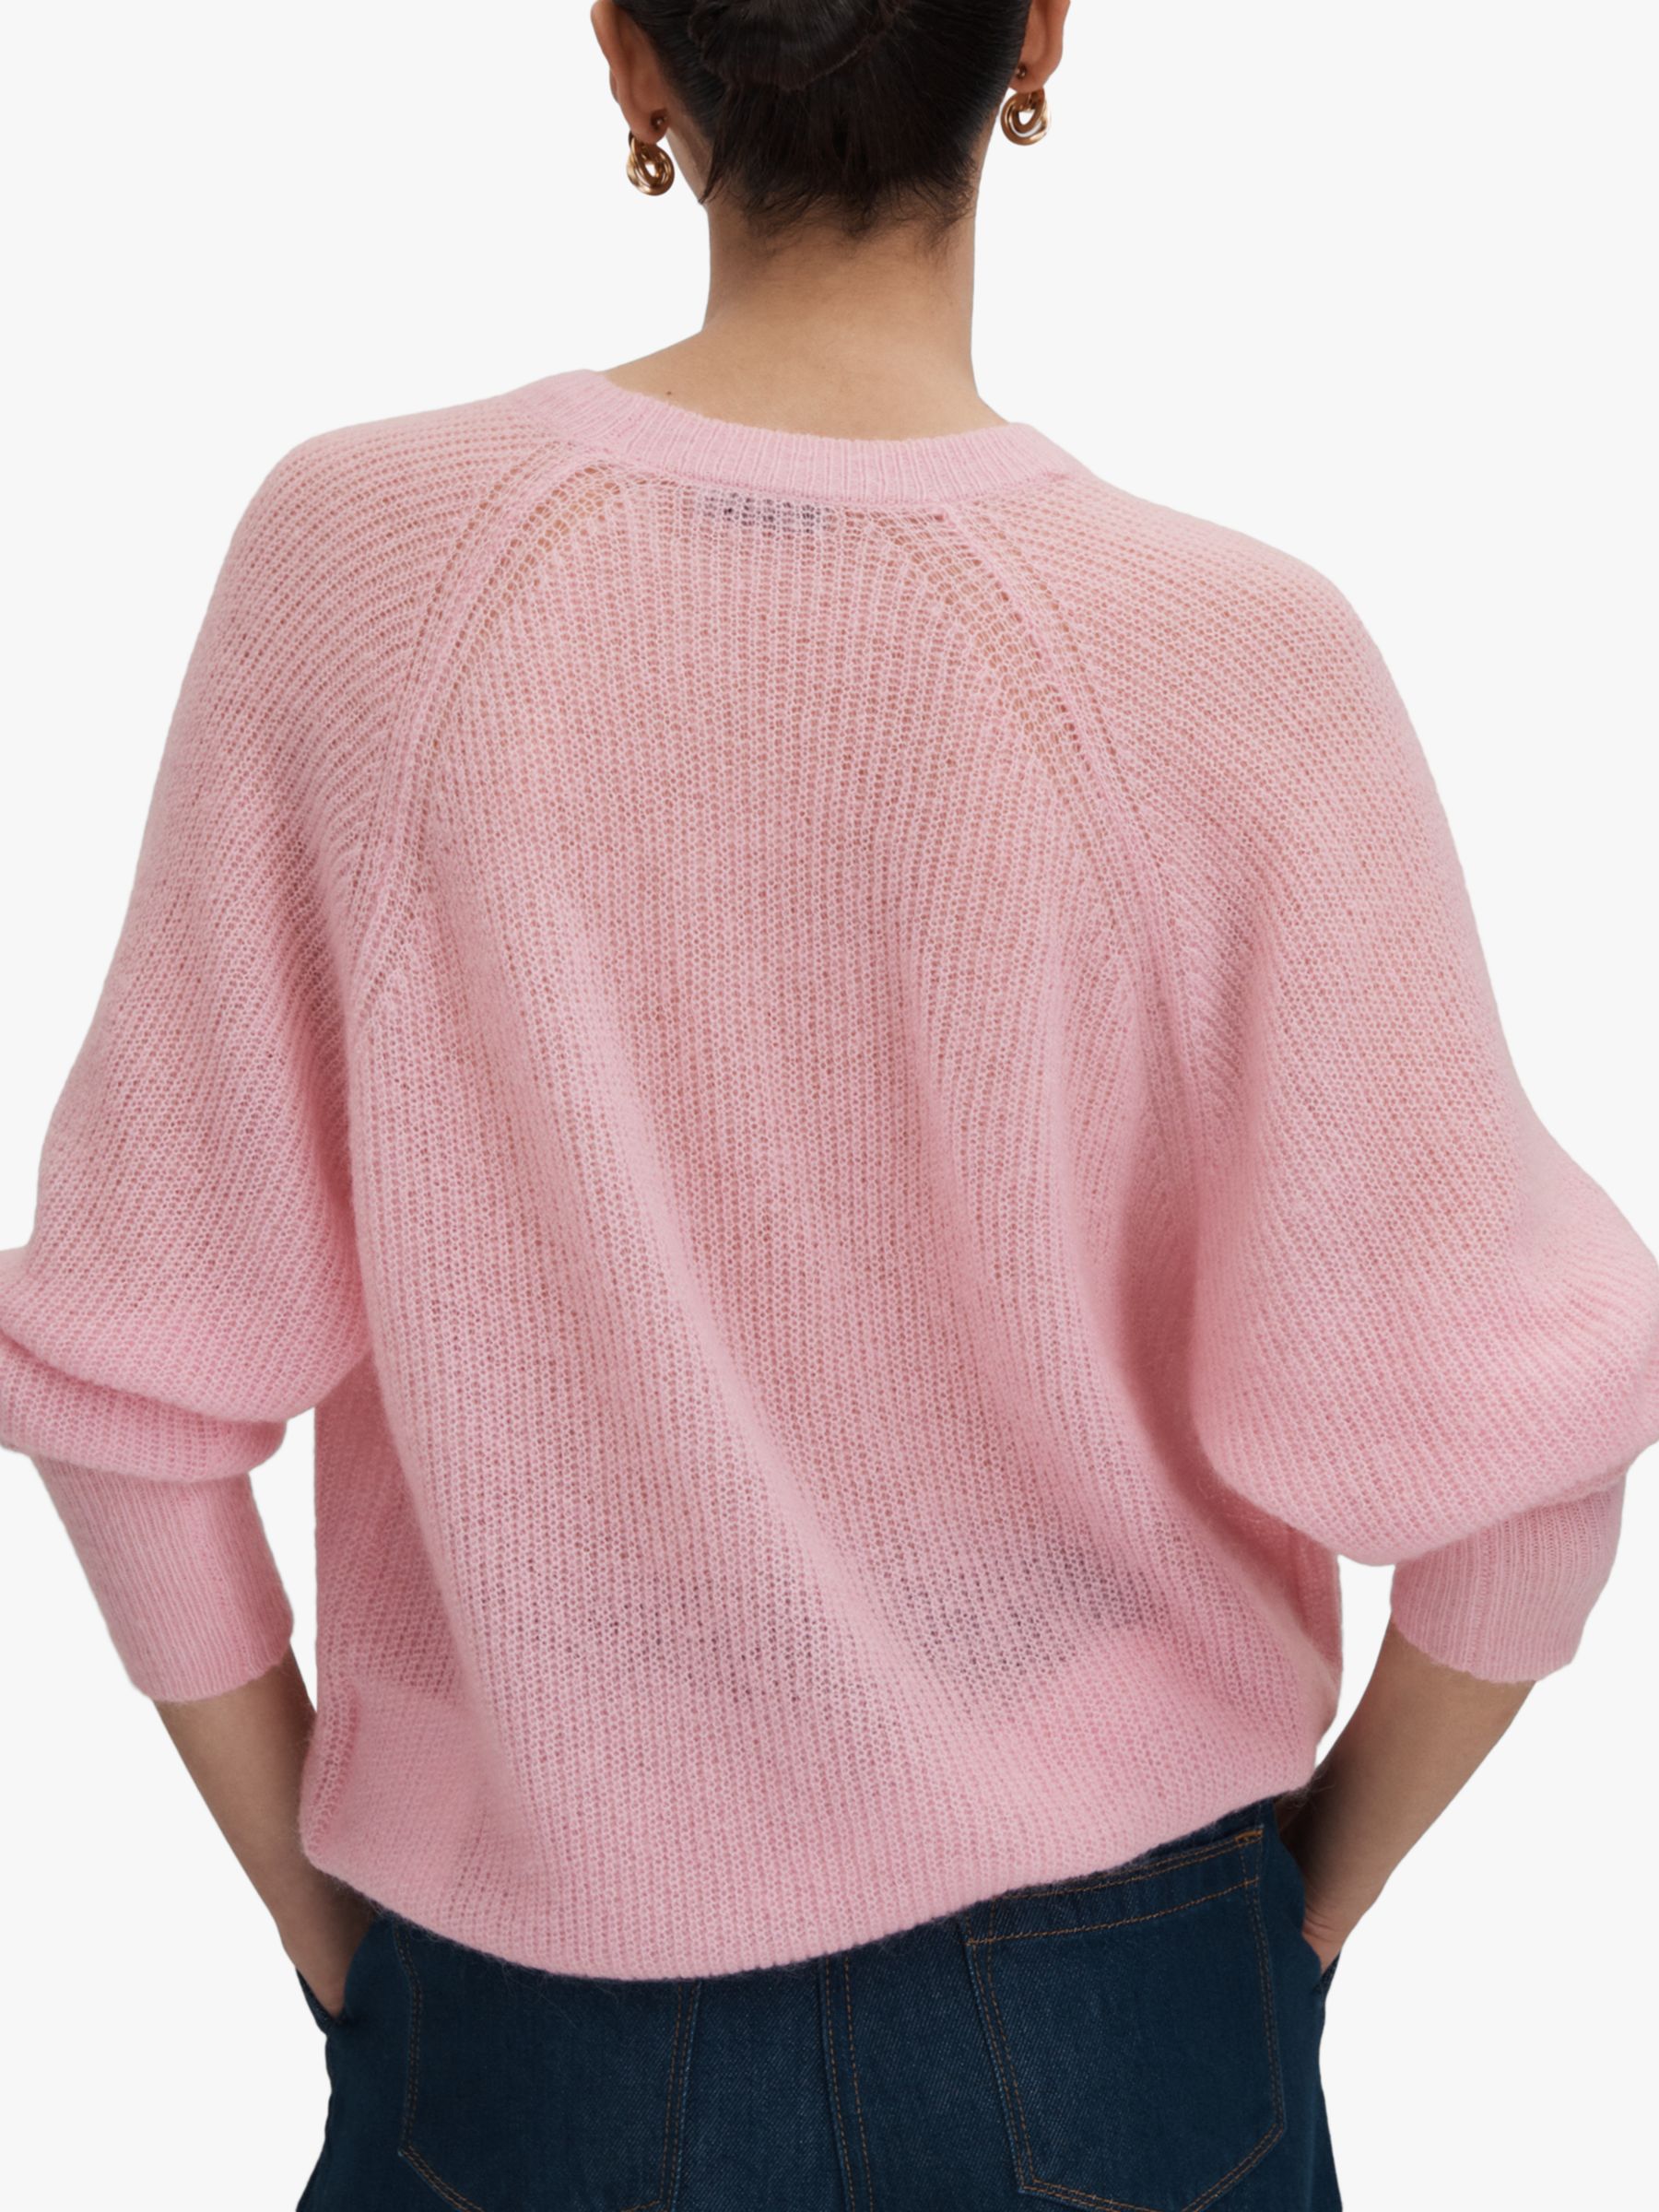 Reiss Mae Wool Blend Jumper, Light Pink, XS